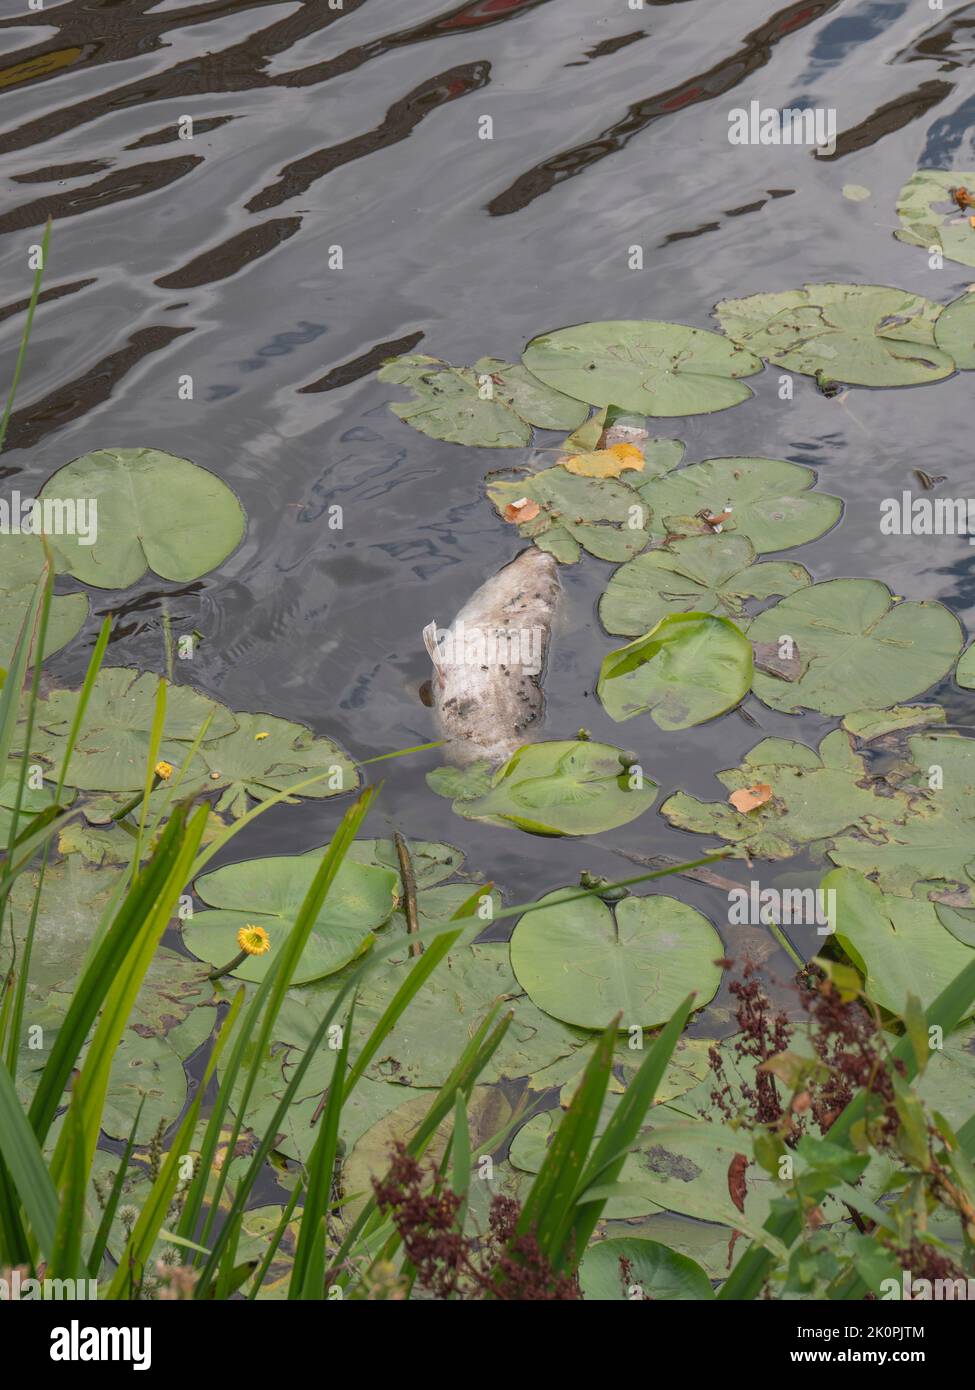 Peces muertos grandes llenos de moscas flotan entre las hojas de lirios de agua Foto de stock